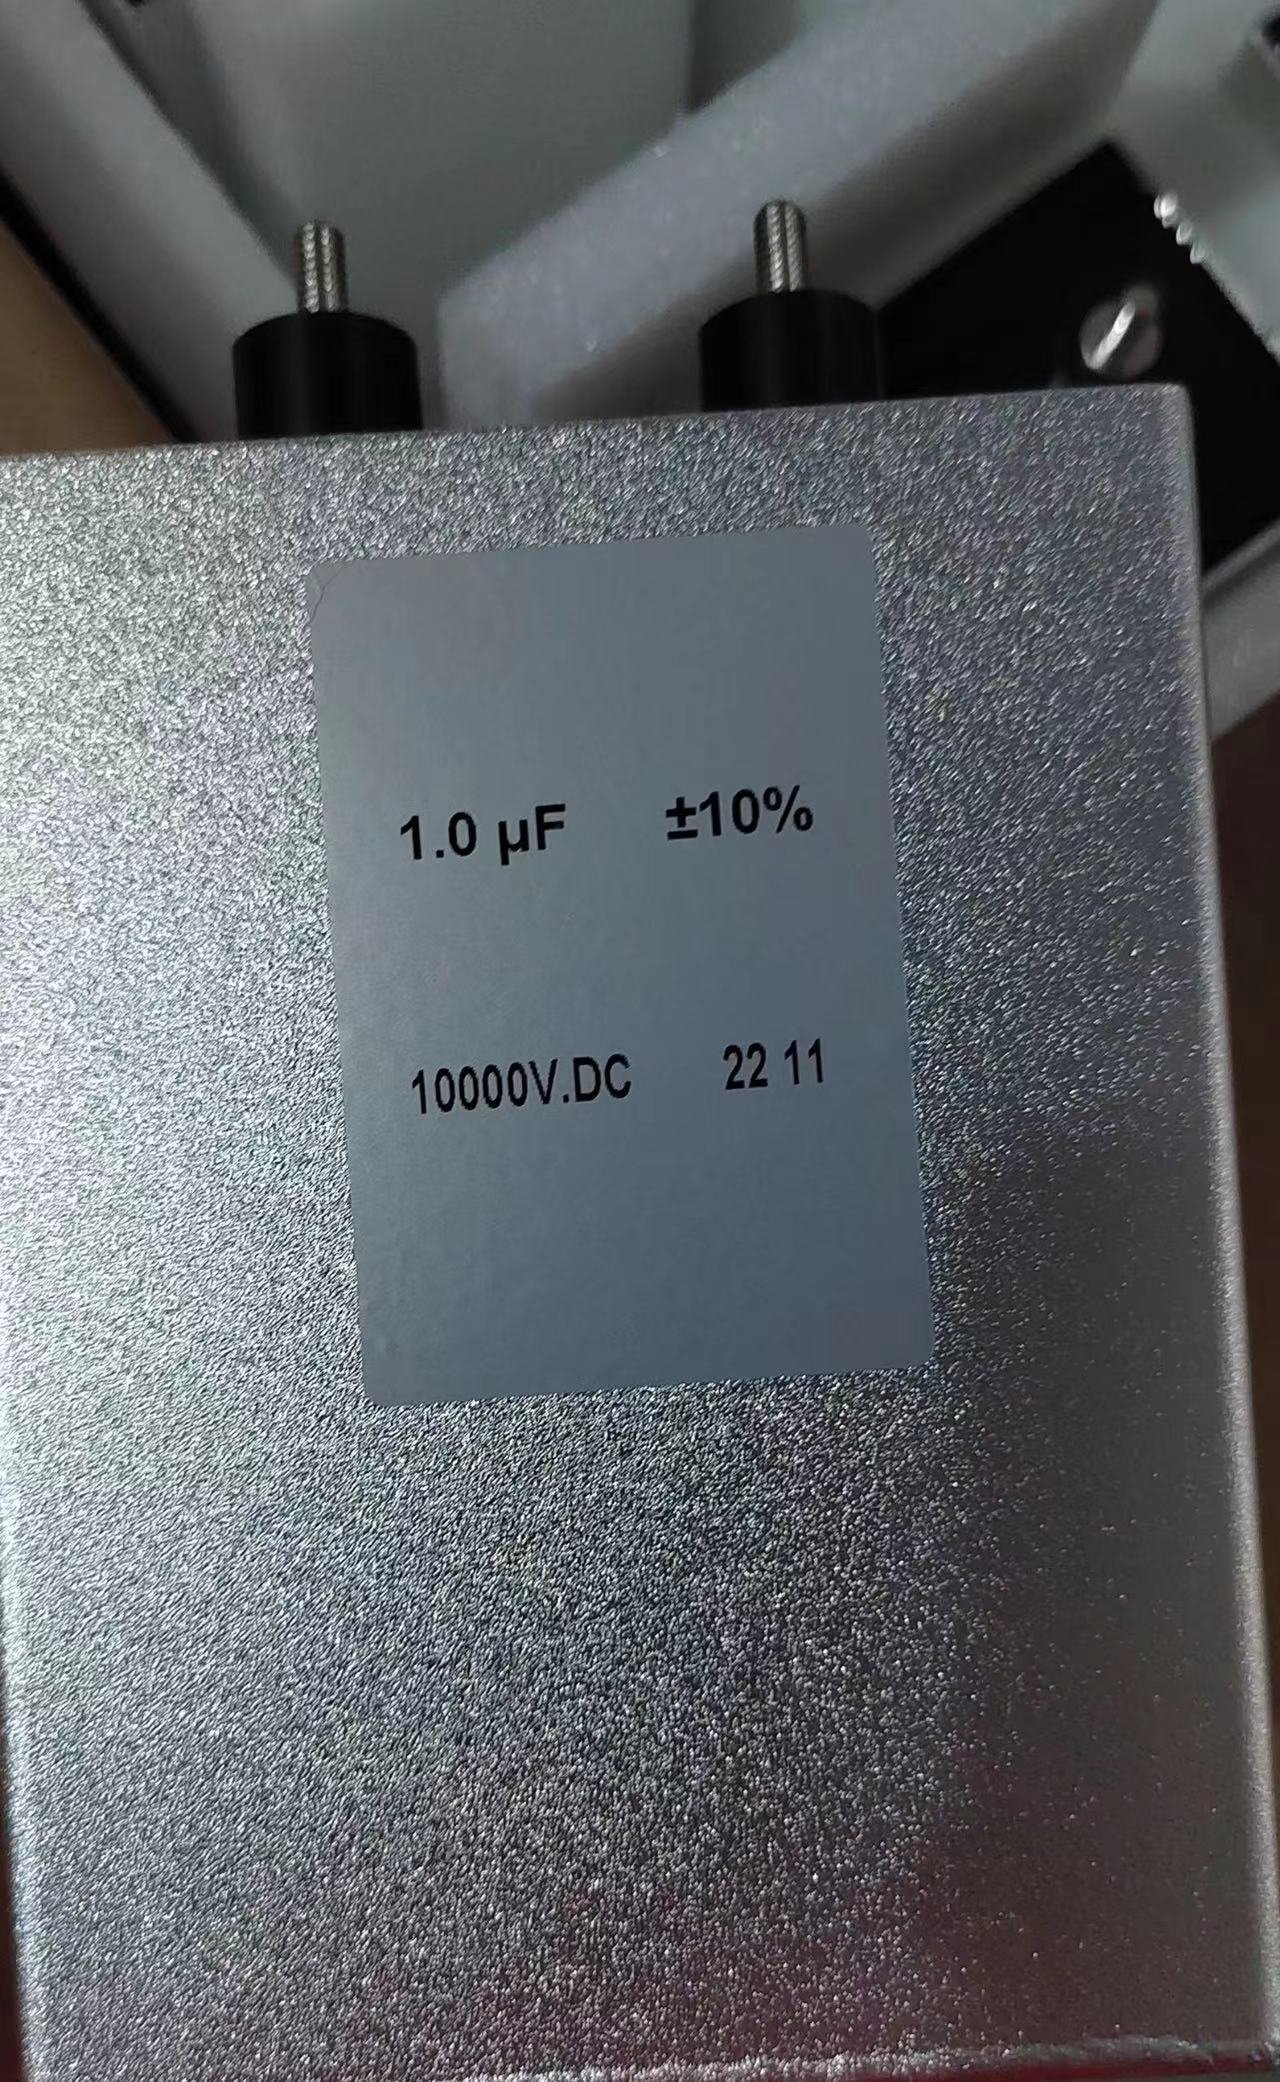 Rynek amerykański VA 1.0UF 10000V Made in China Wysokonapięciowy kondensator foliowy do medycznej maszyny do terapii pulsacyjnym polem elektromagnetycznym PEMF